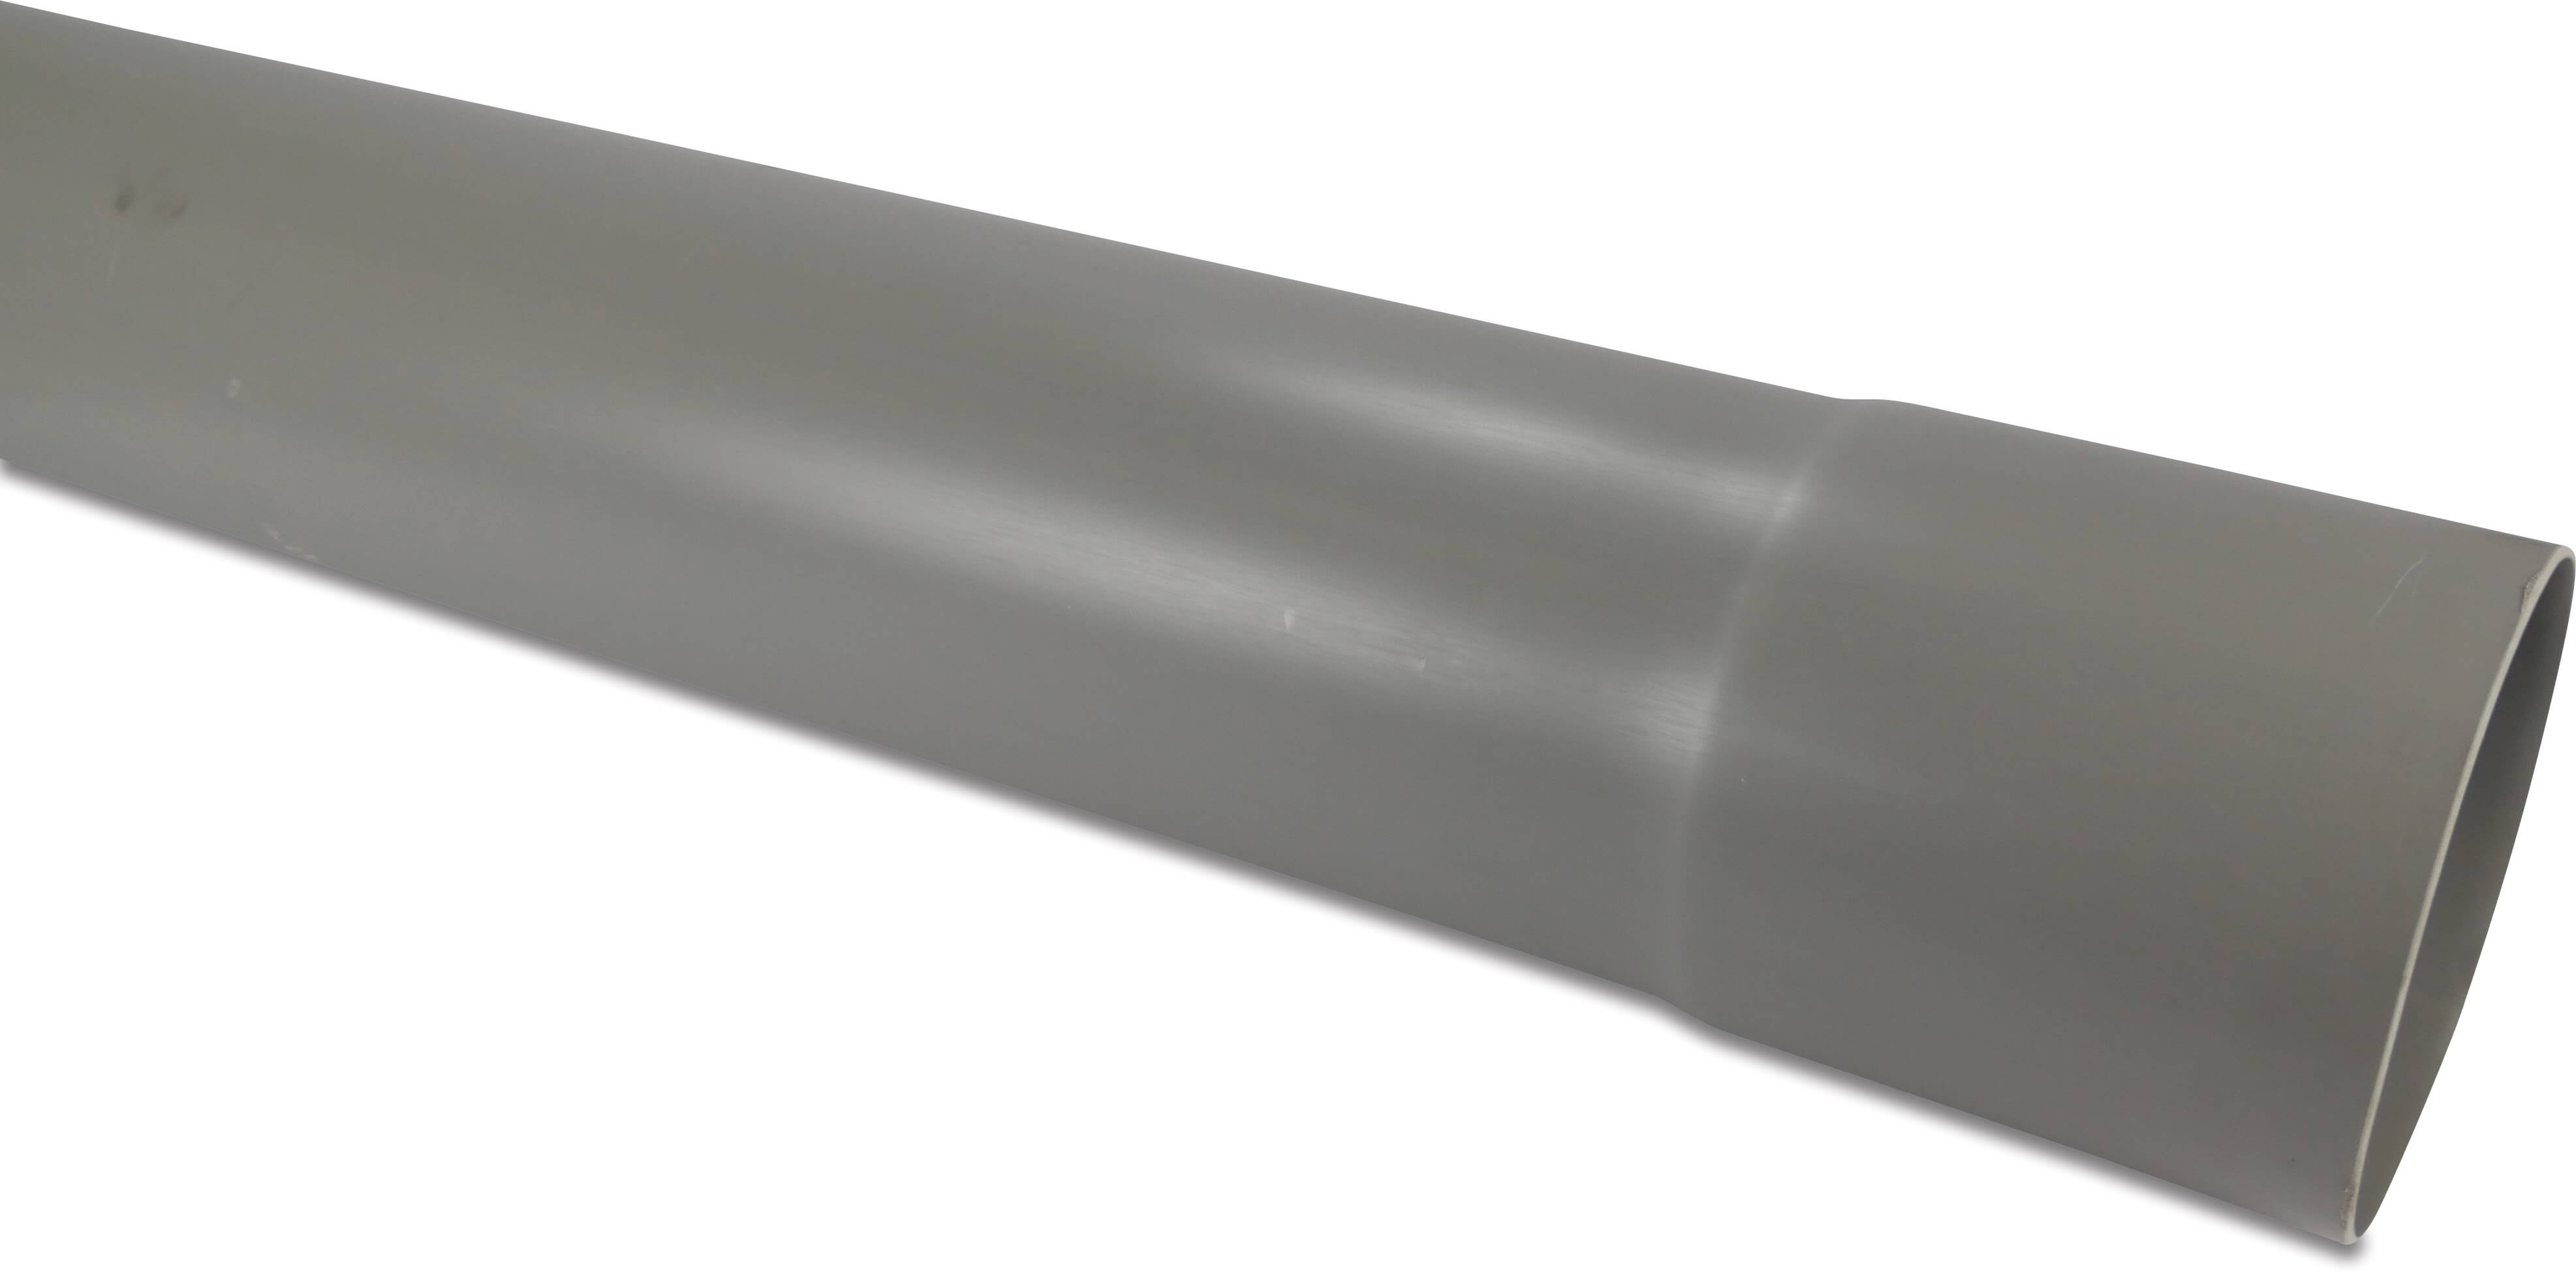 Rura kanalizacyjna PVC-U 110 mm x 2,2 mm SN2 KW x gładkie szary 5m